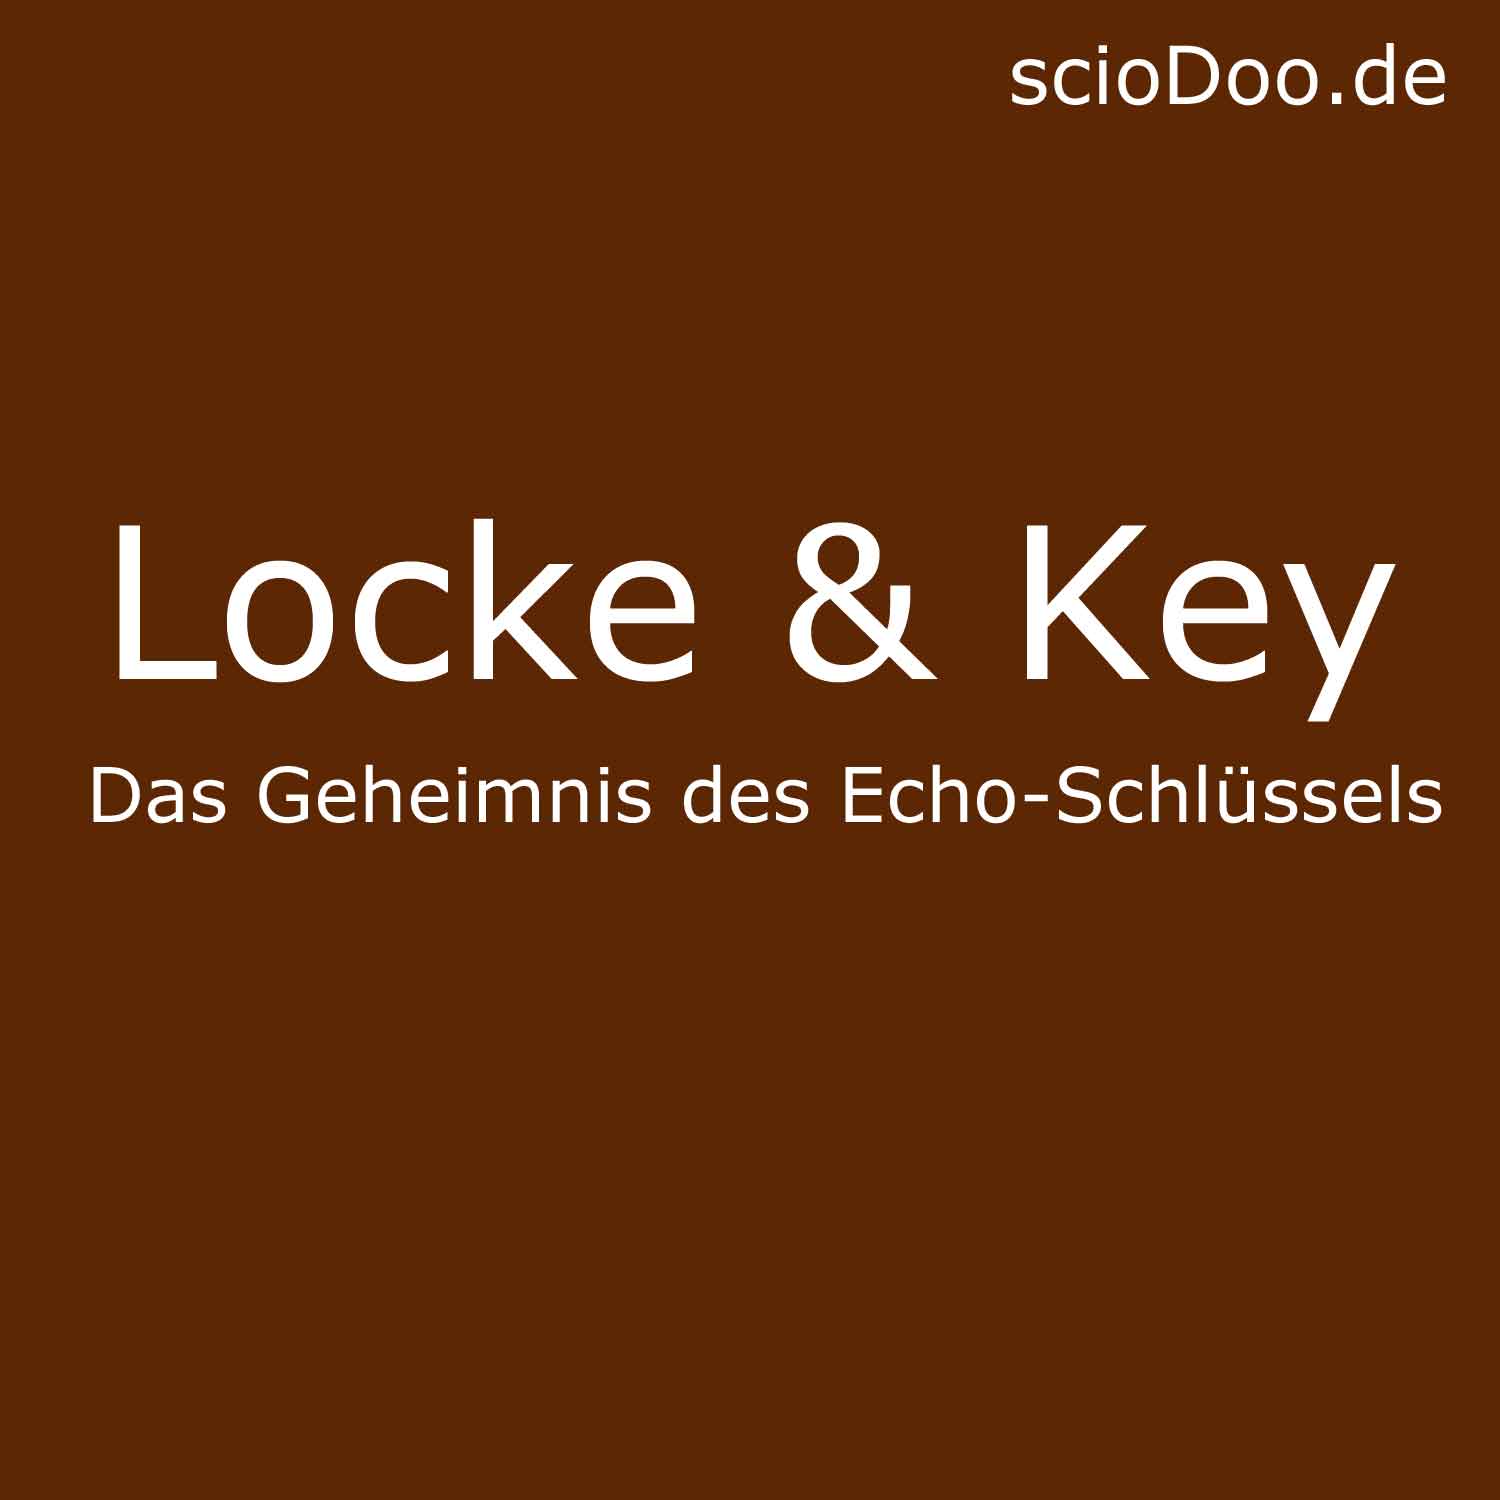 Echo-Schlüssel aus Locke & Key: Dessen Geheimnis und Vorgeschichte